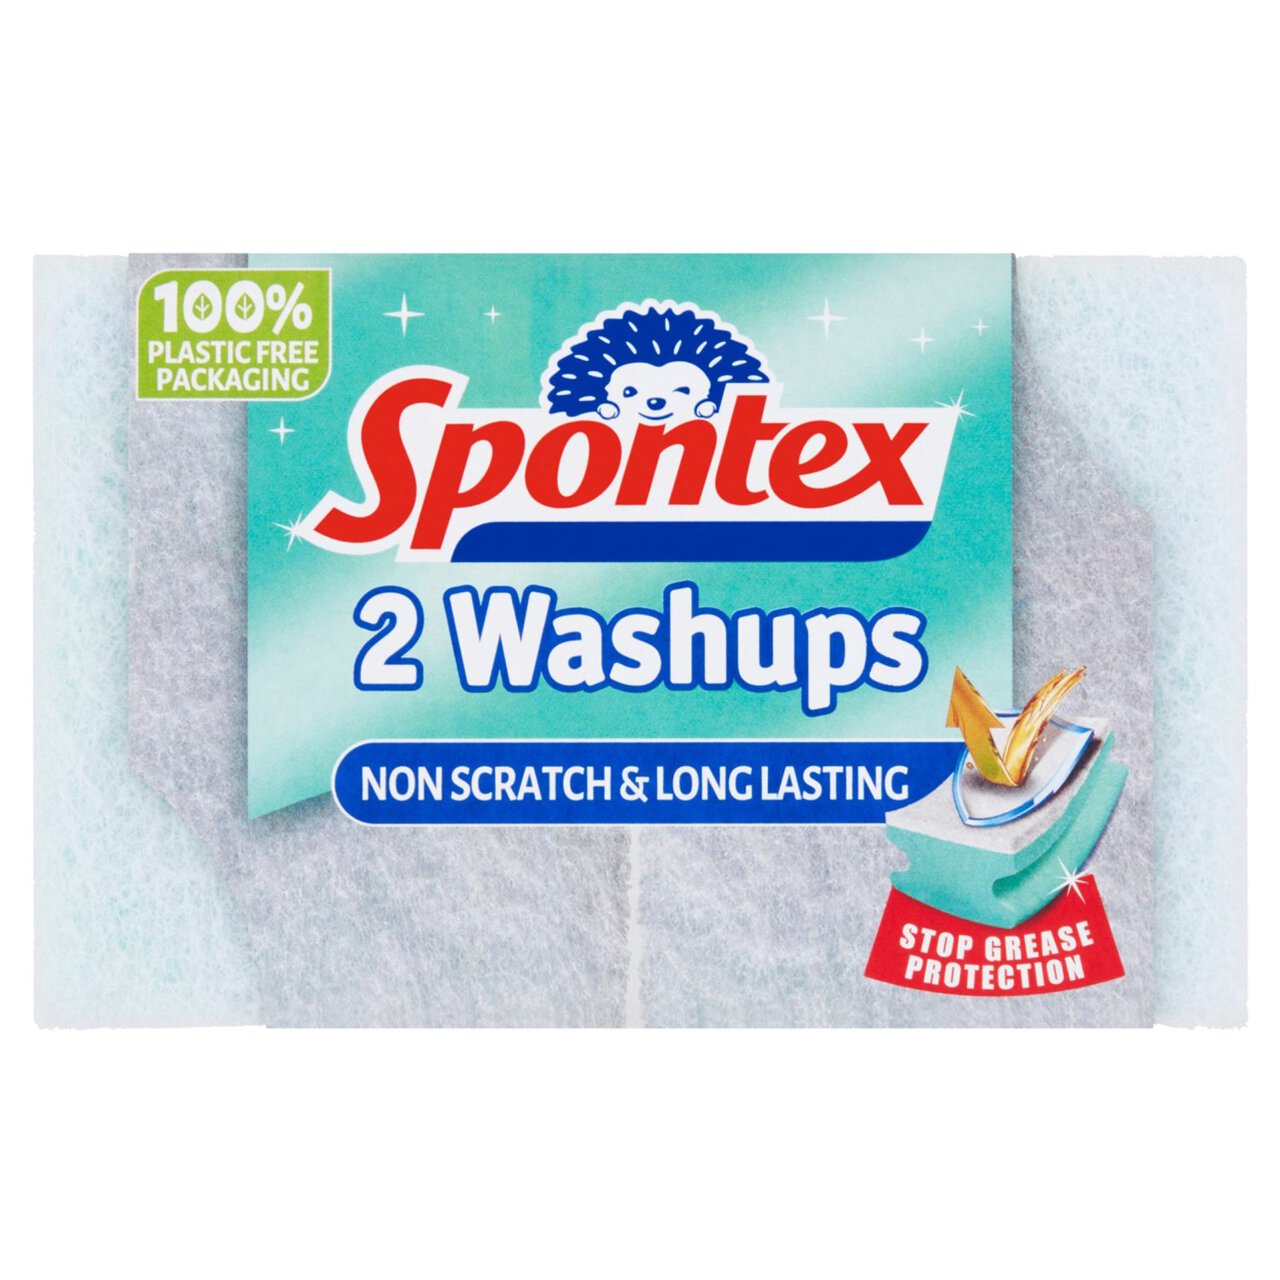 Spontex Washups Non-Scratch 2 per pack